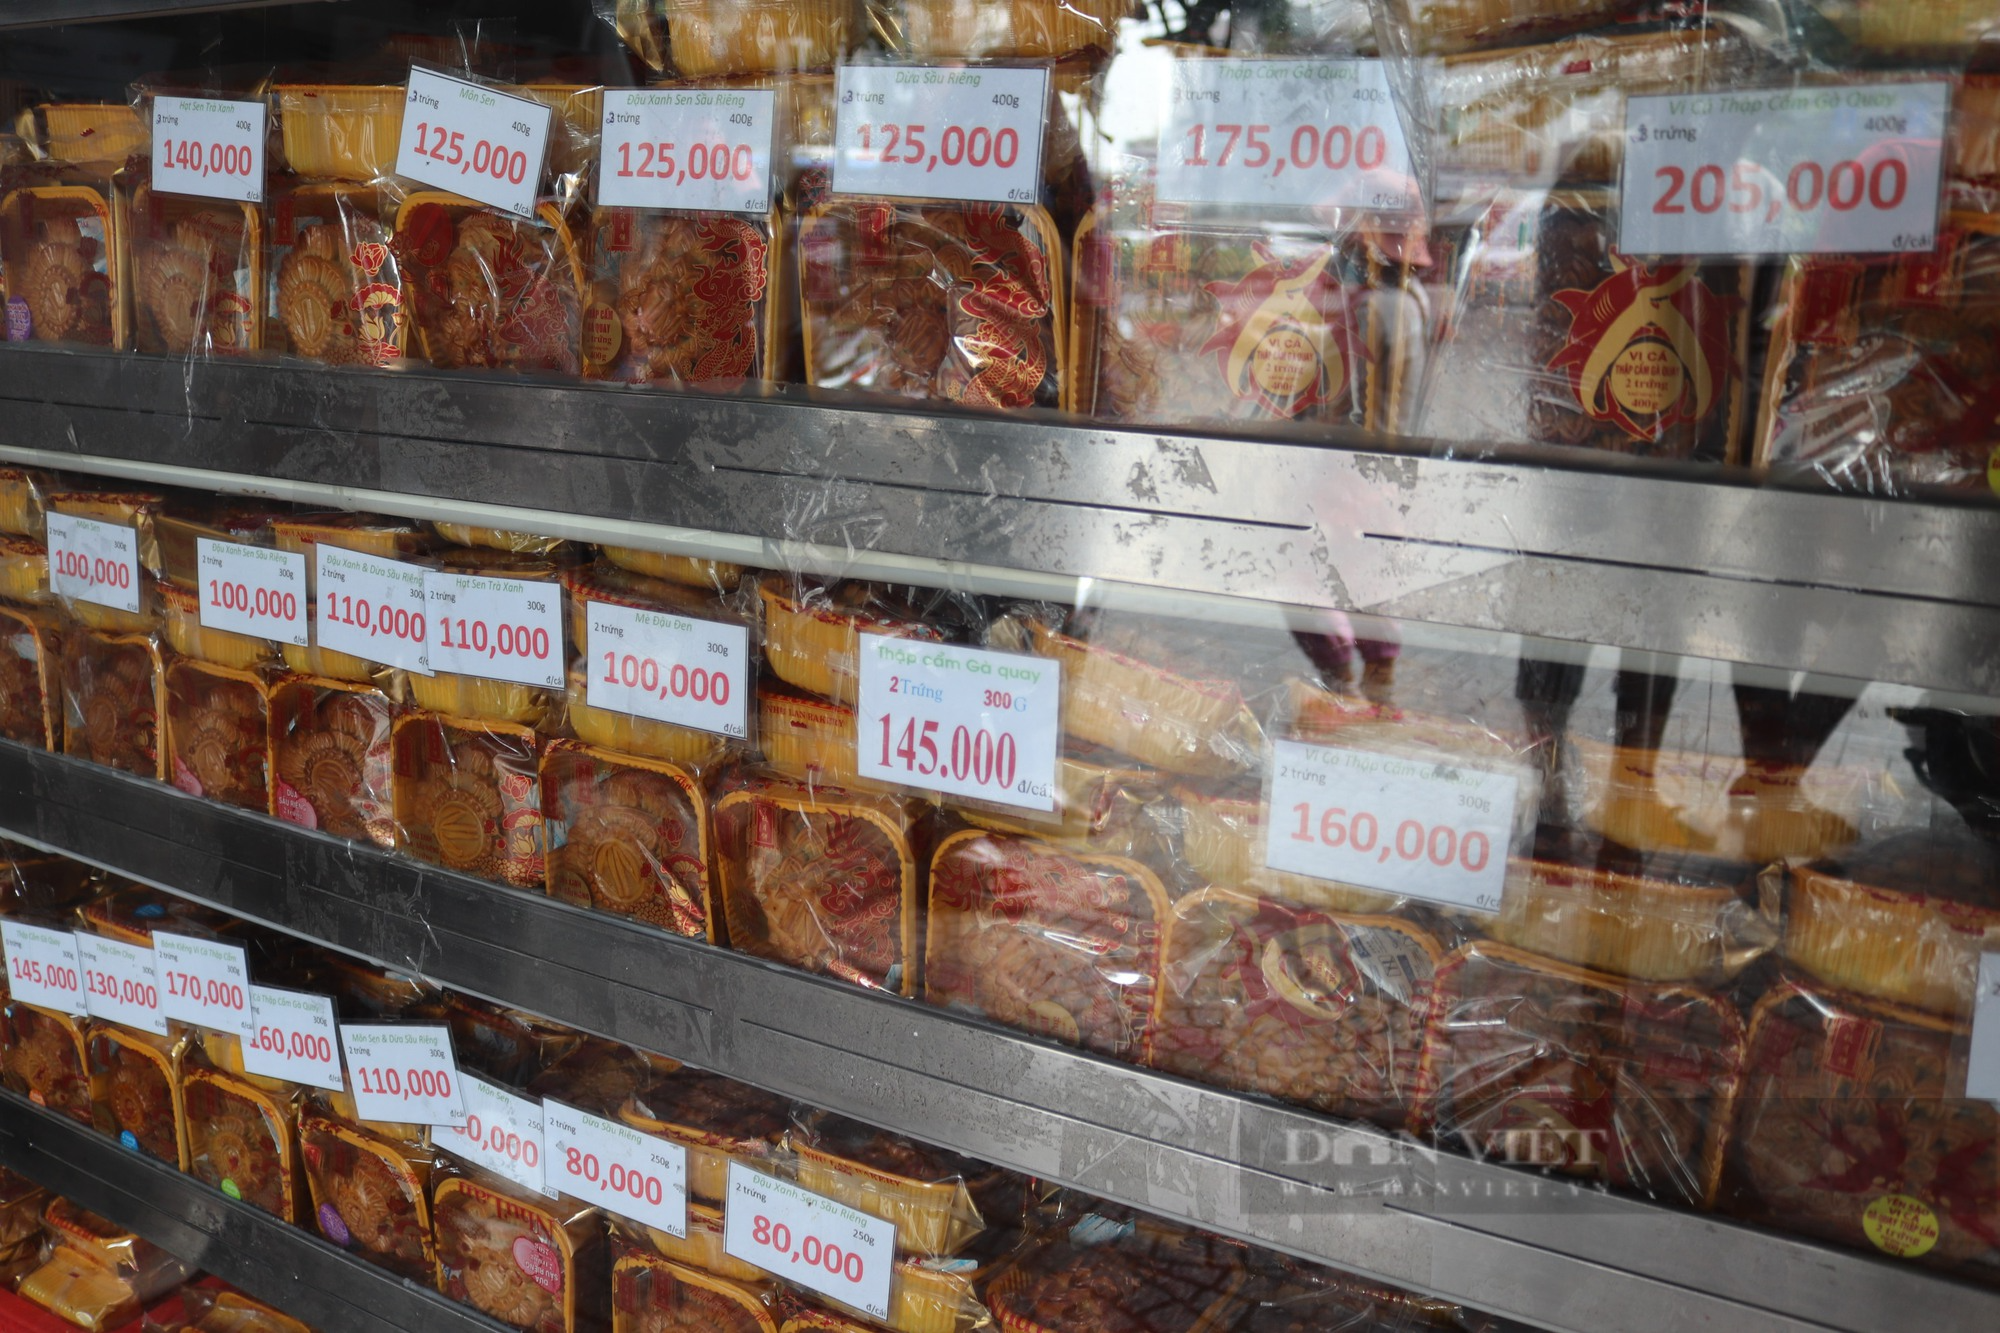 Giữa lúc bánh trung thu đại hạ giá vẫn ế, thương hiệu nổi tiếng nhất Sài Gòn đang bán buôn ra sao? - Ảnh 9.